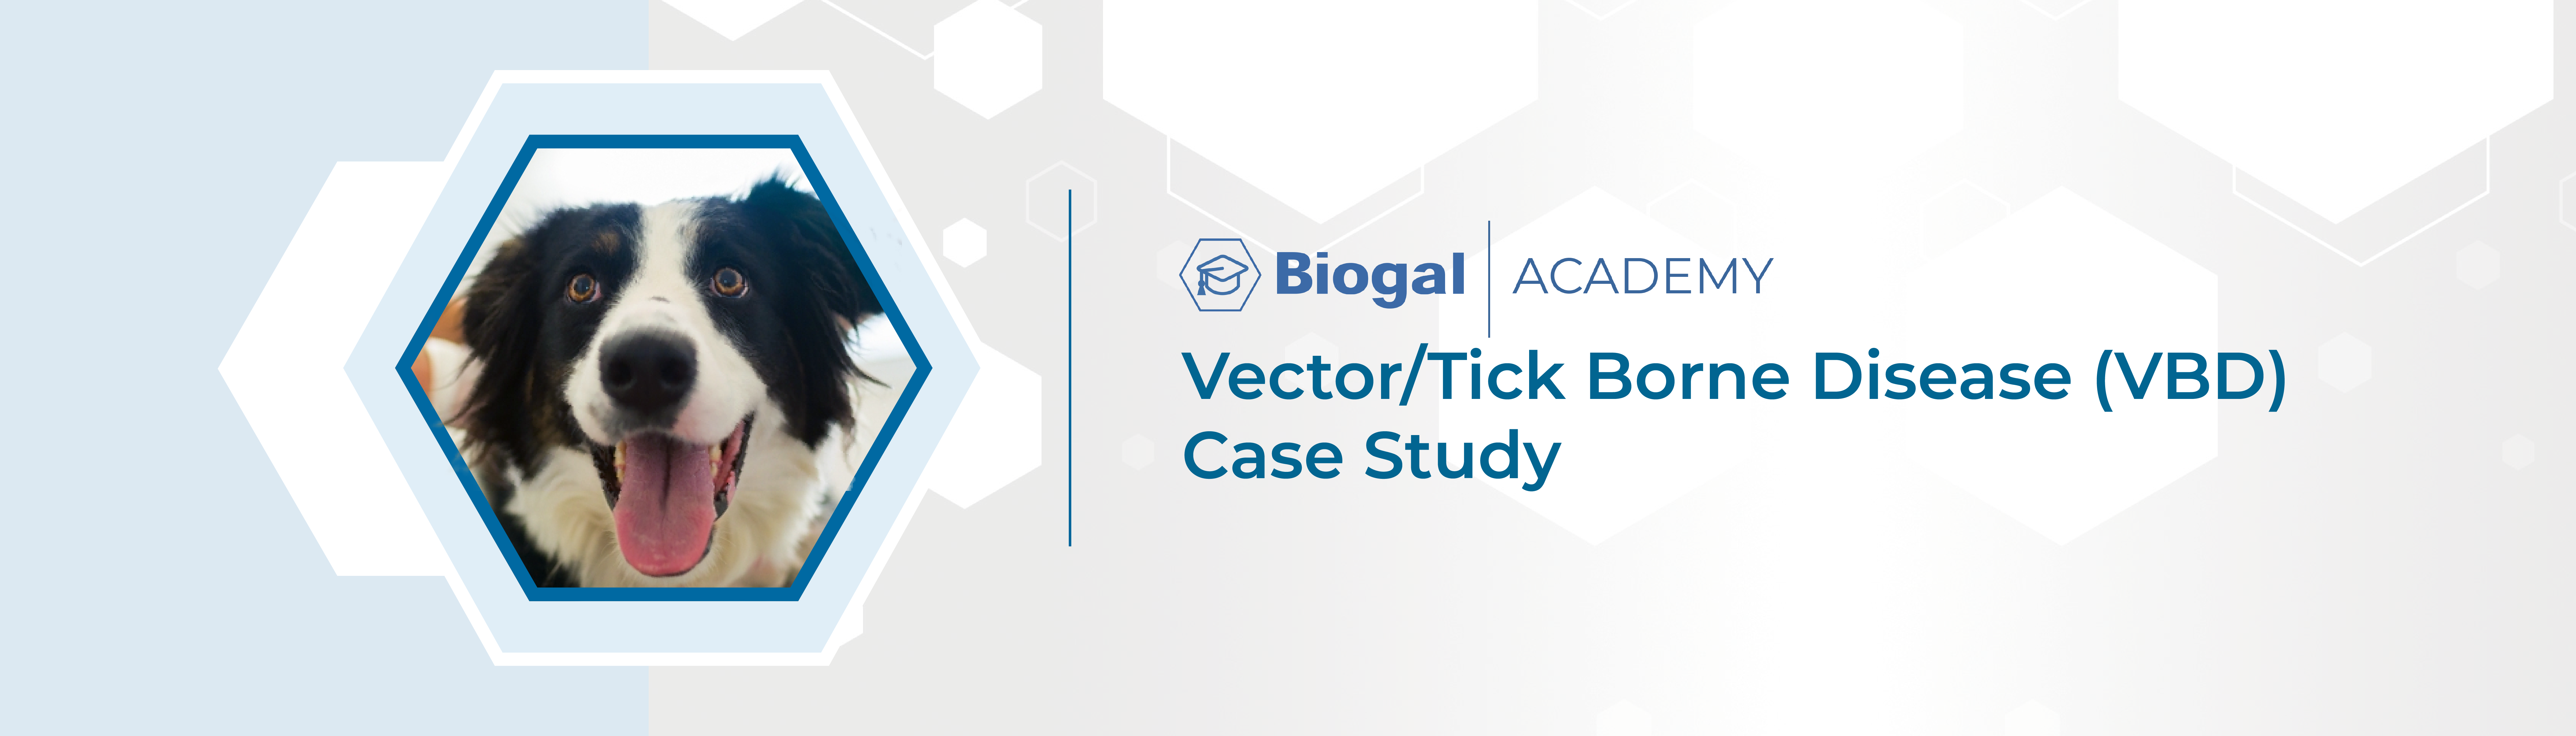 Vector/Tick Borne Disease (VBD) Case Study